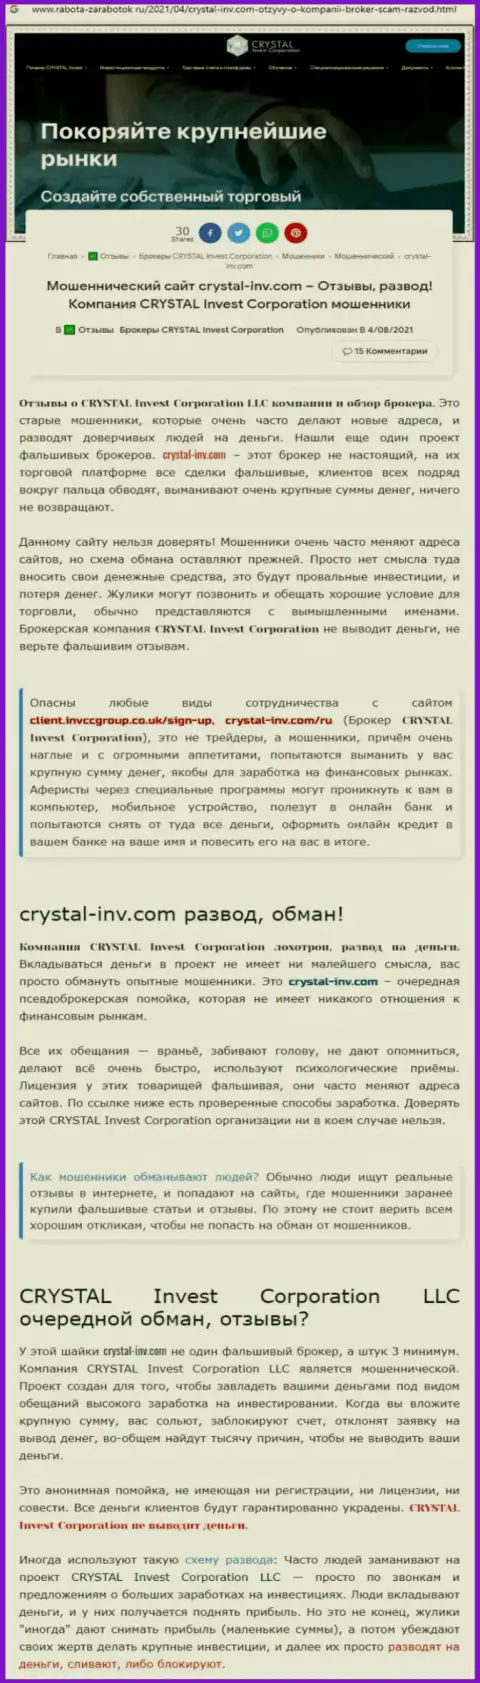 Материал, разоблачающий организацию Crystal Invest Corporation, взятый с интернет-ресурса с обзорами махинаций разных организаций